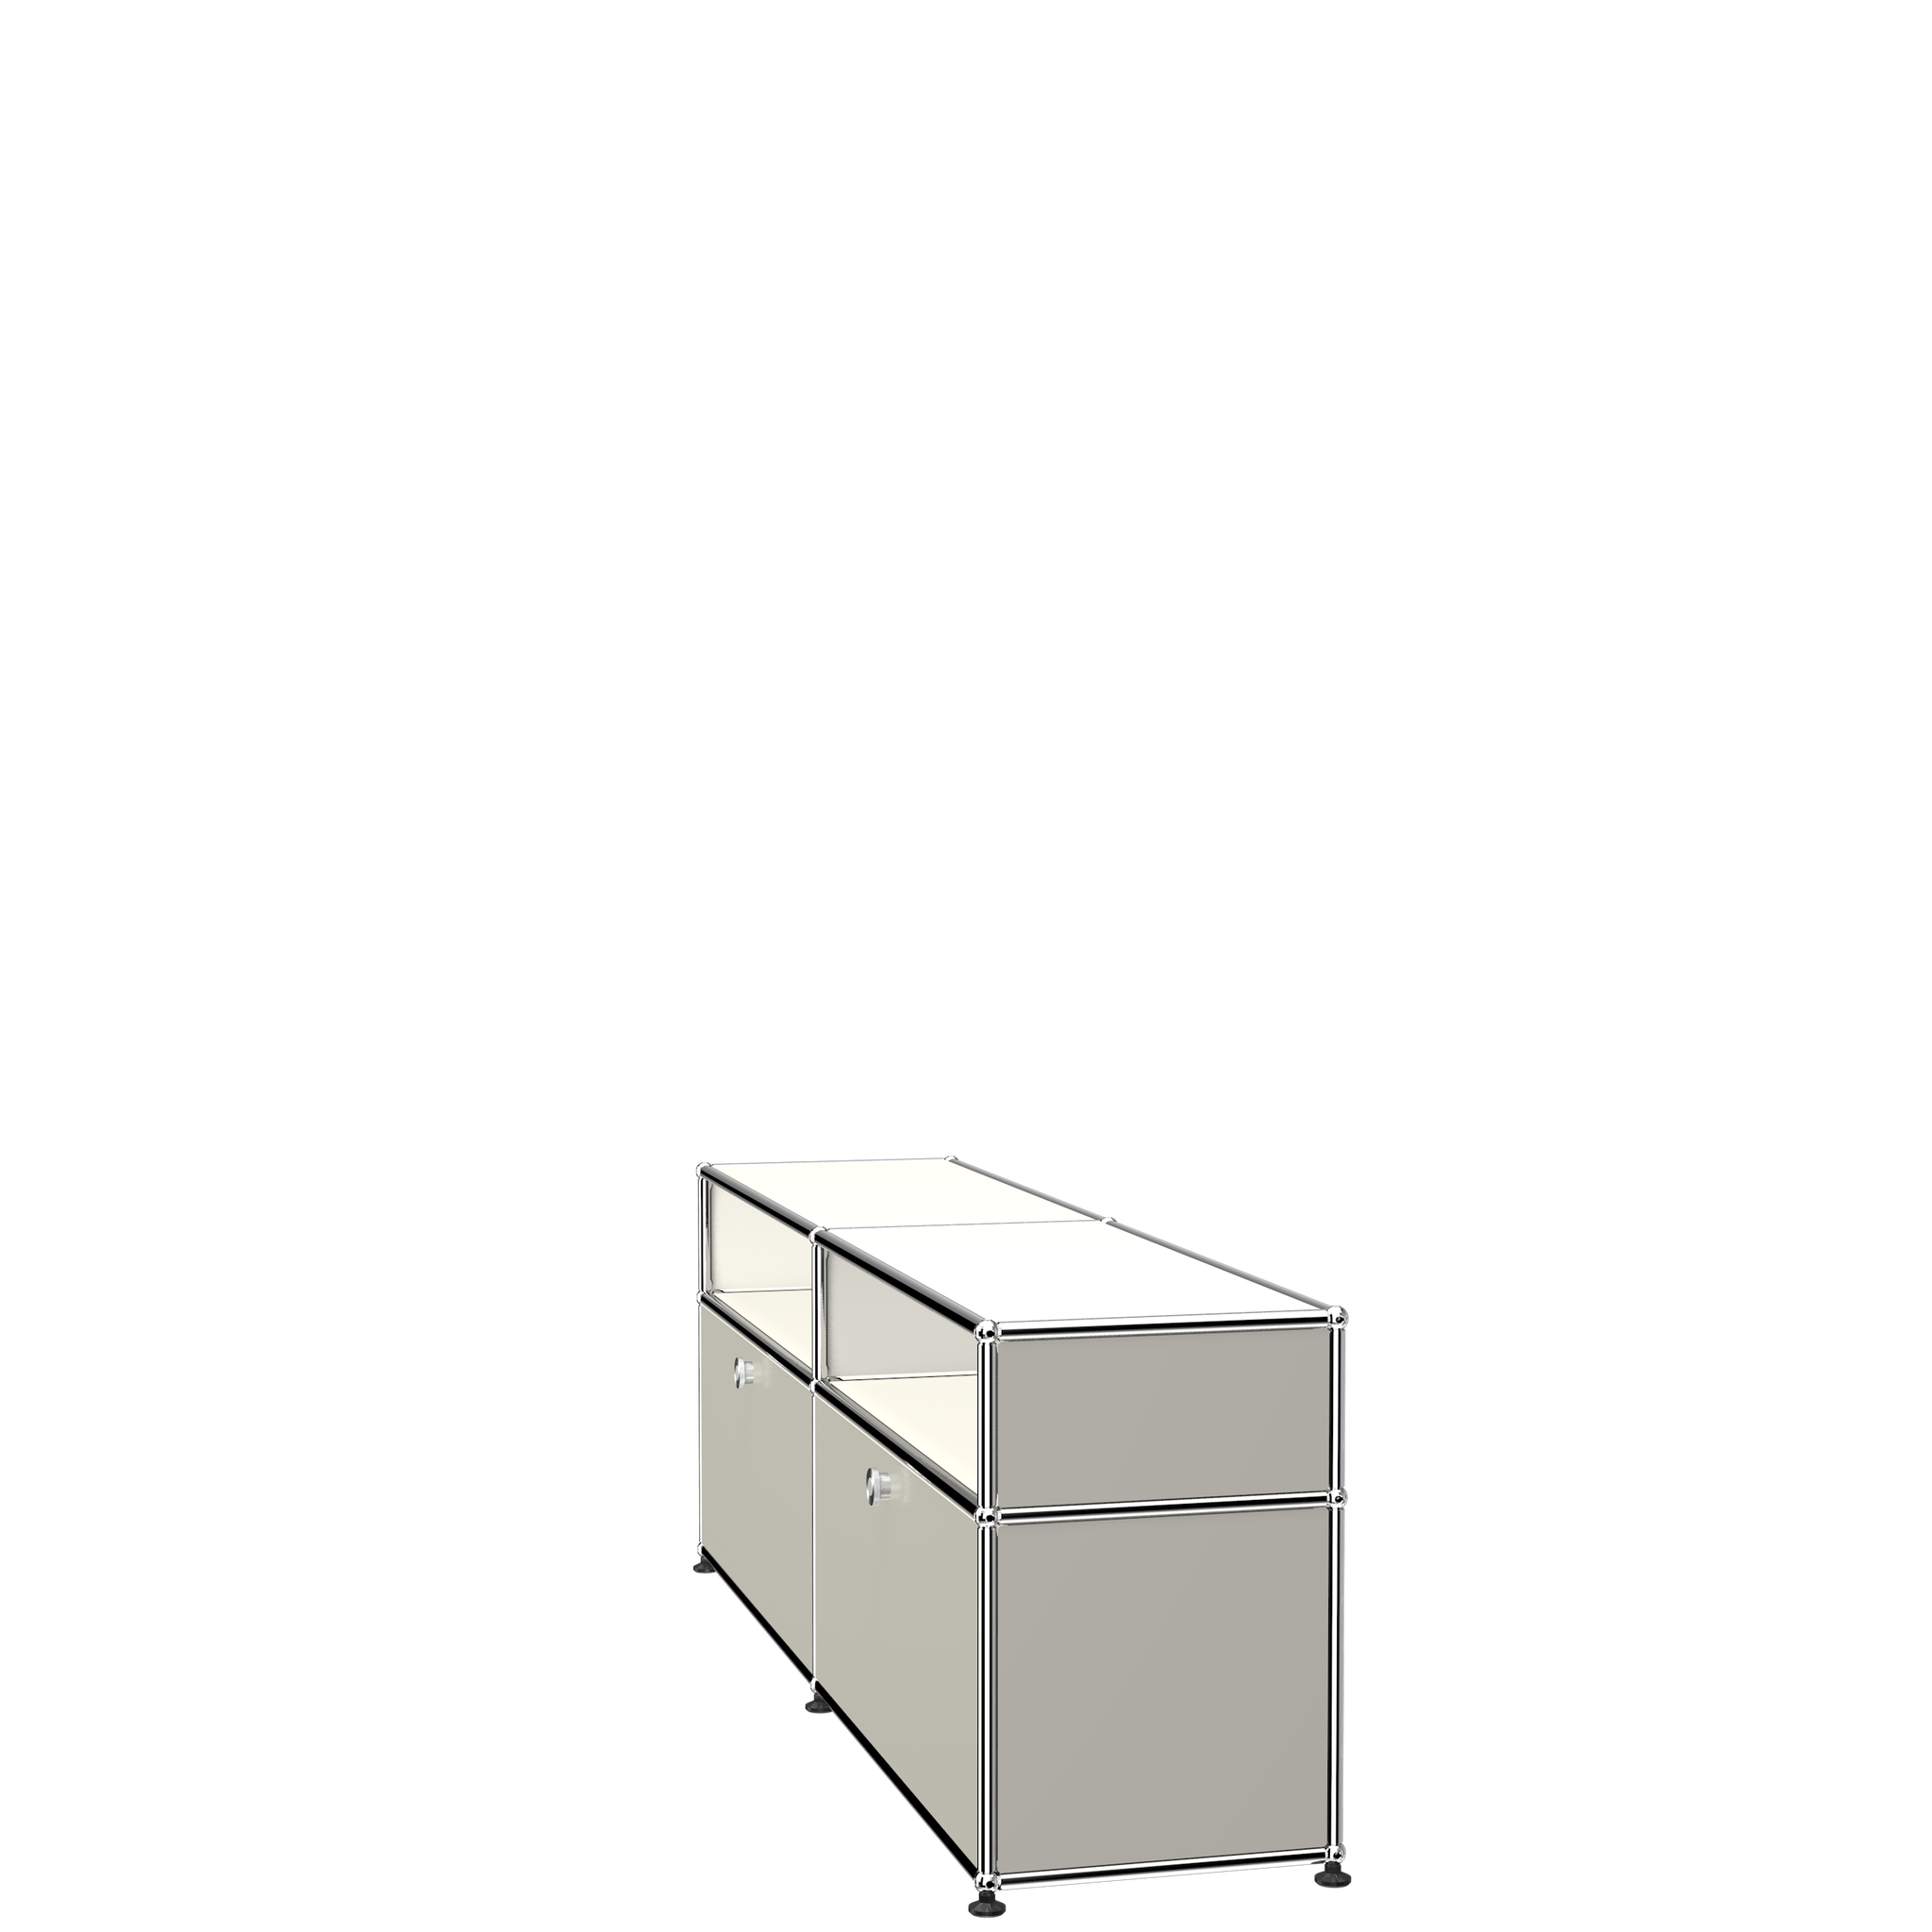 USM Haller Media Storage with Shelves (O2) Side VIew